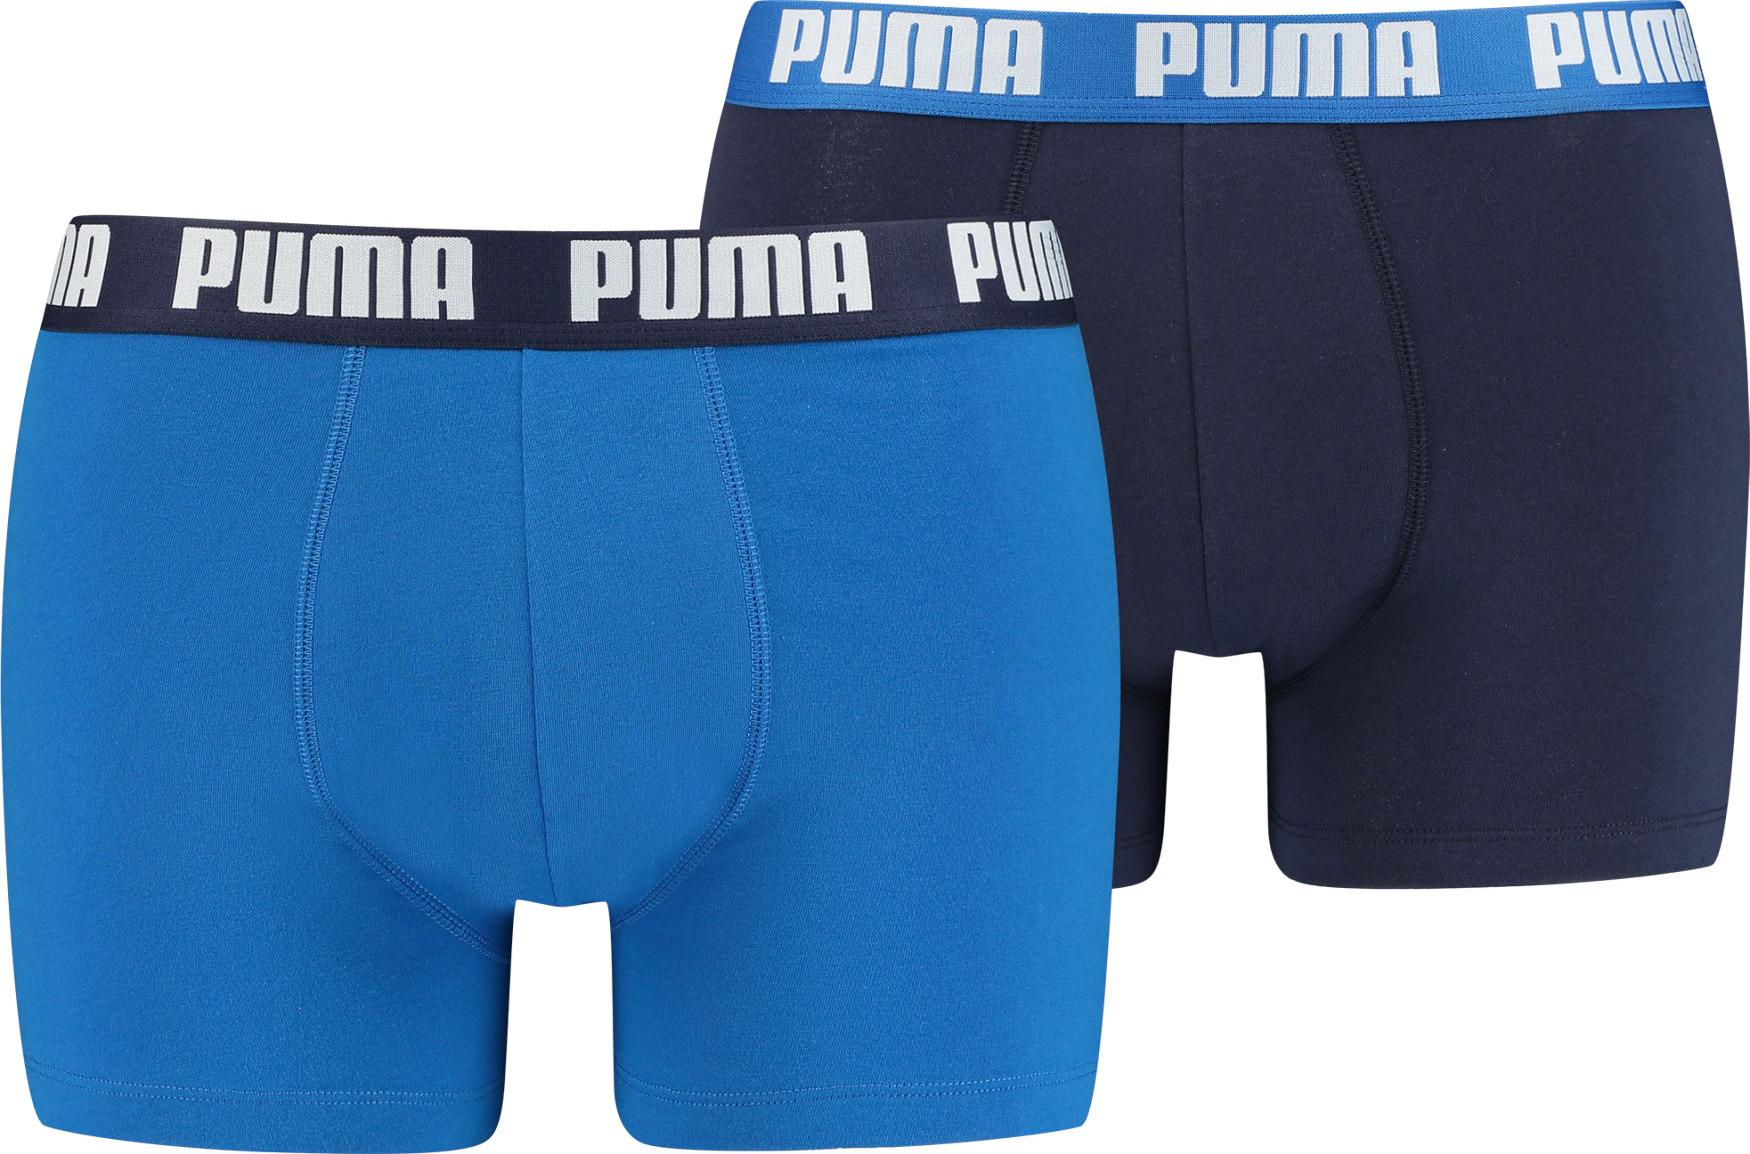 Puma Boxers pakke 2 stk - Blå /Sort Small